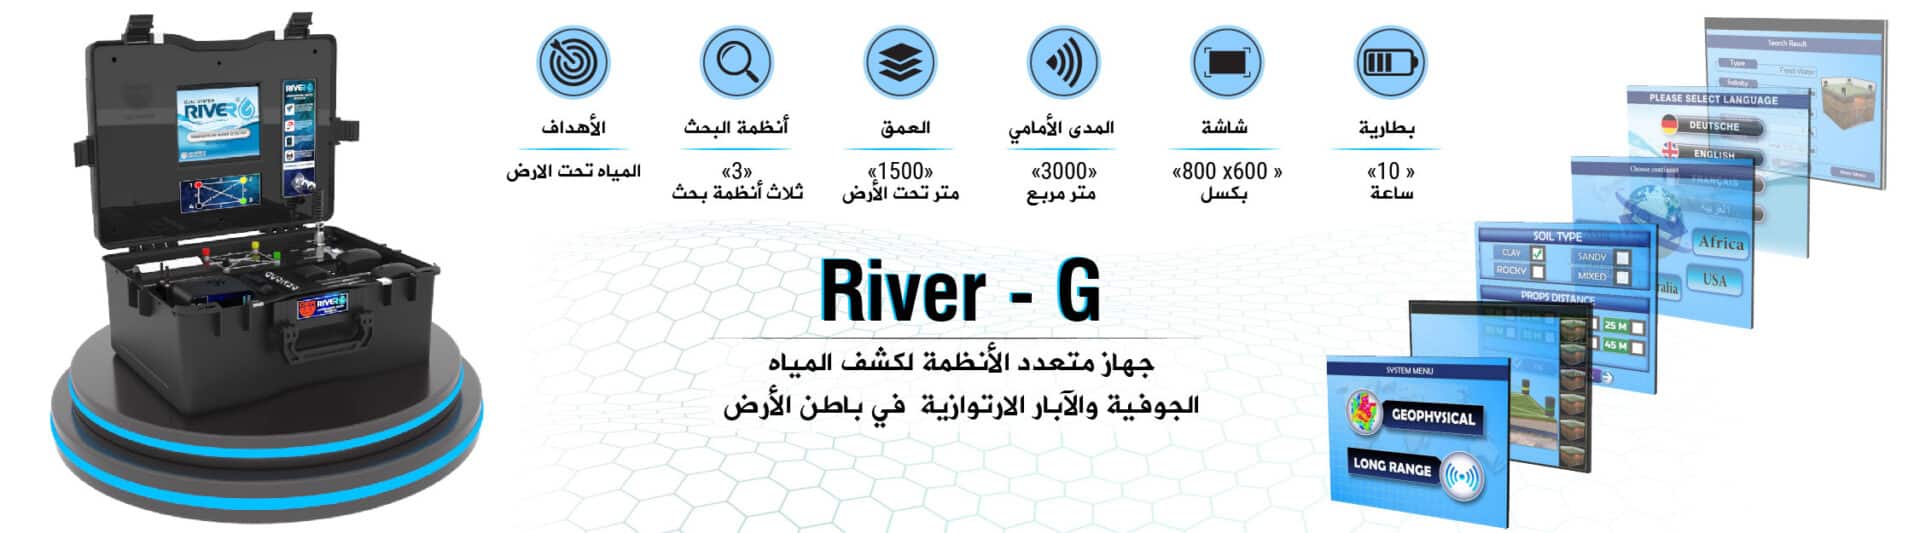 ريفر جي 3 نظام التصوير ثلاثي الأبعاد للكشف عن المياه الجوفية